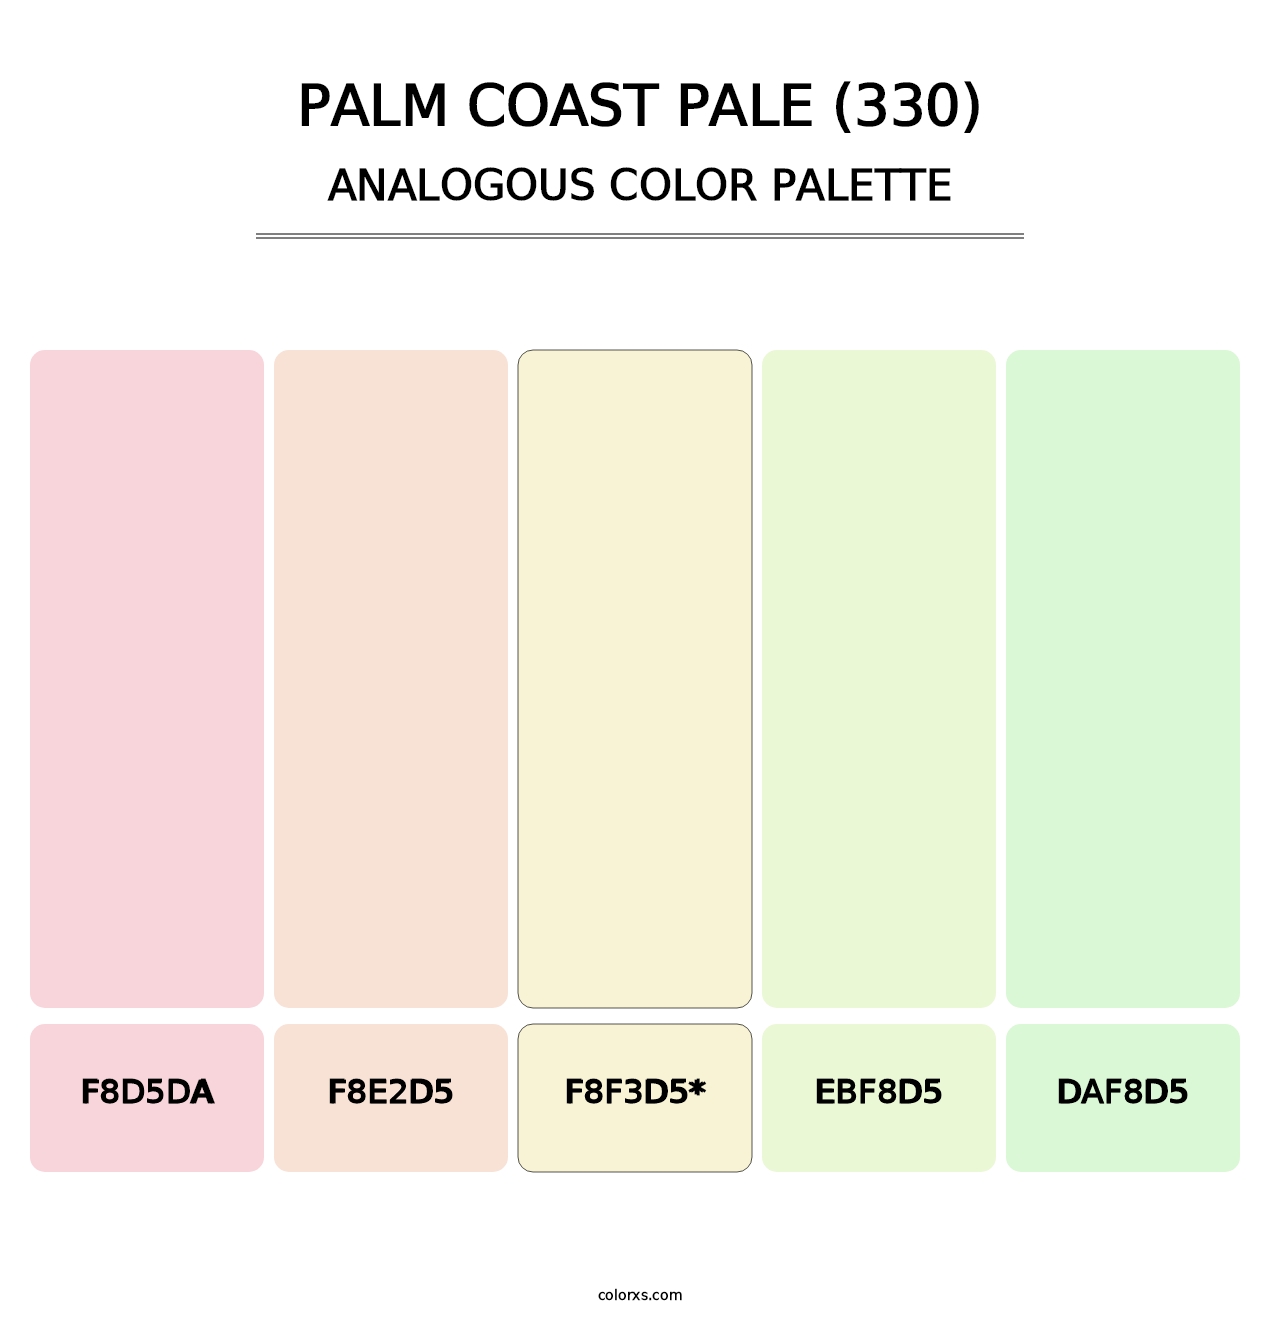 Palm Coast Pale (330) - Analogous Color Palette